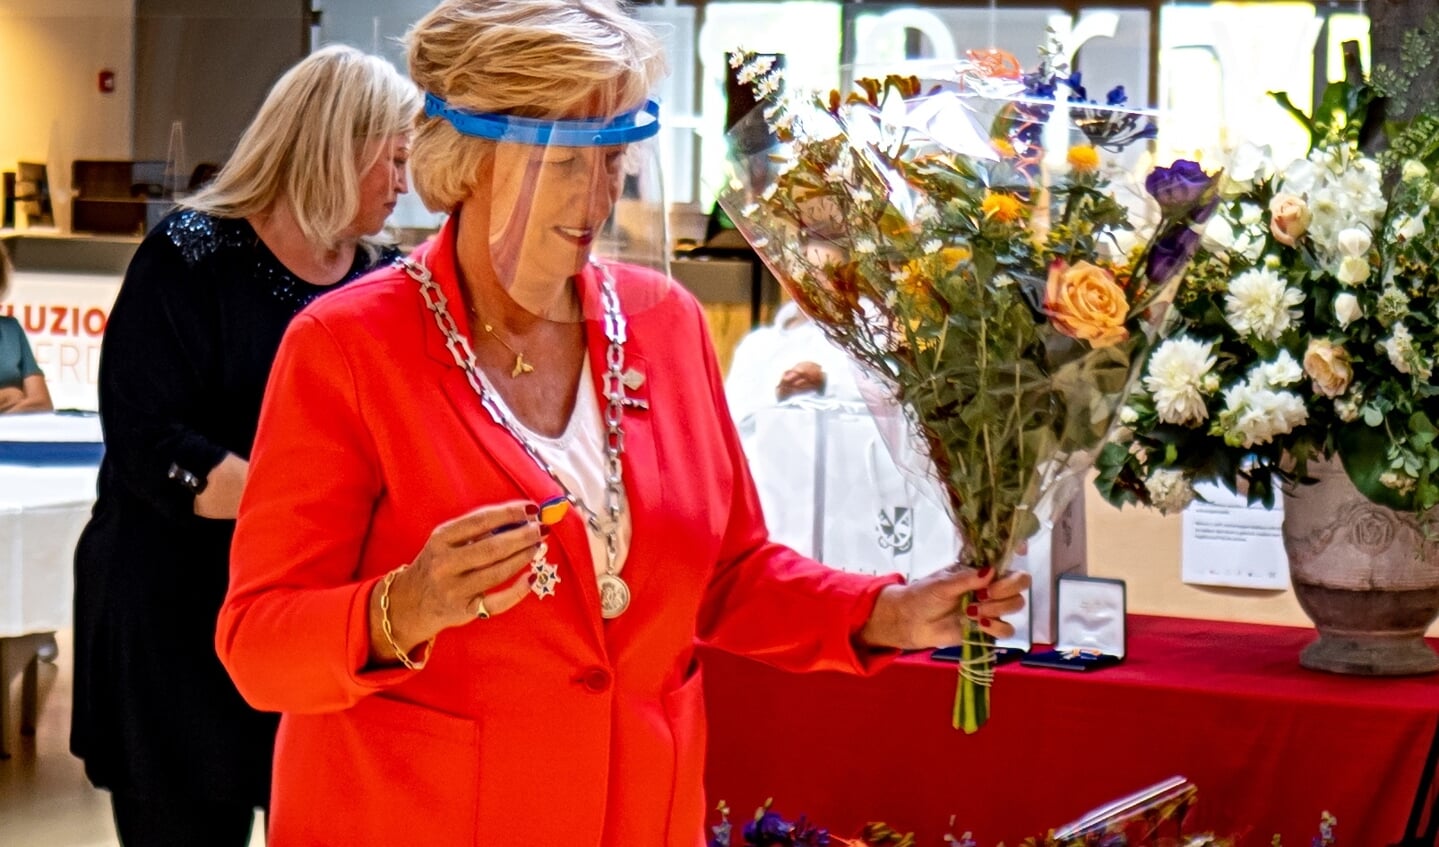 Burgemeester Laila Driessen met lintje en bloemen én getooid met spatmasker op weg naar één van de gedecoreerden.